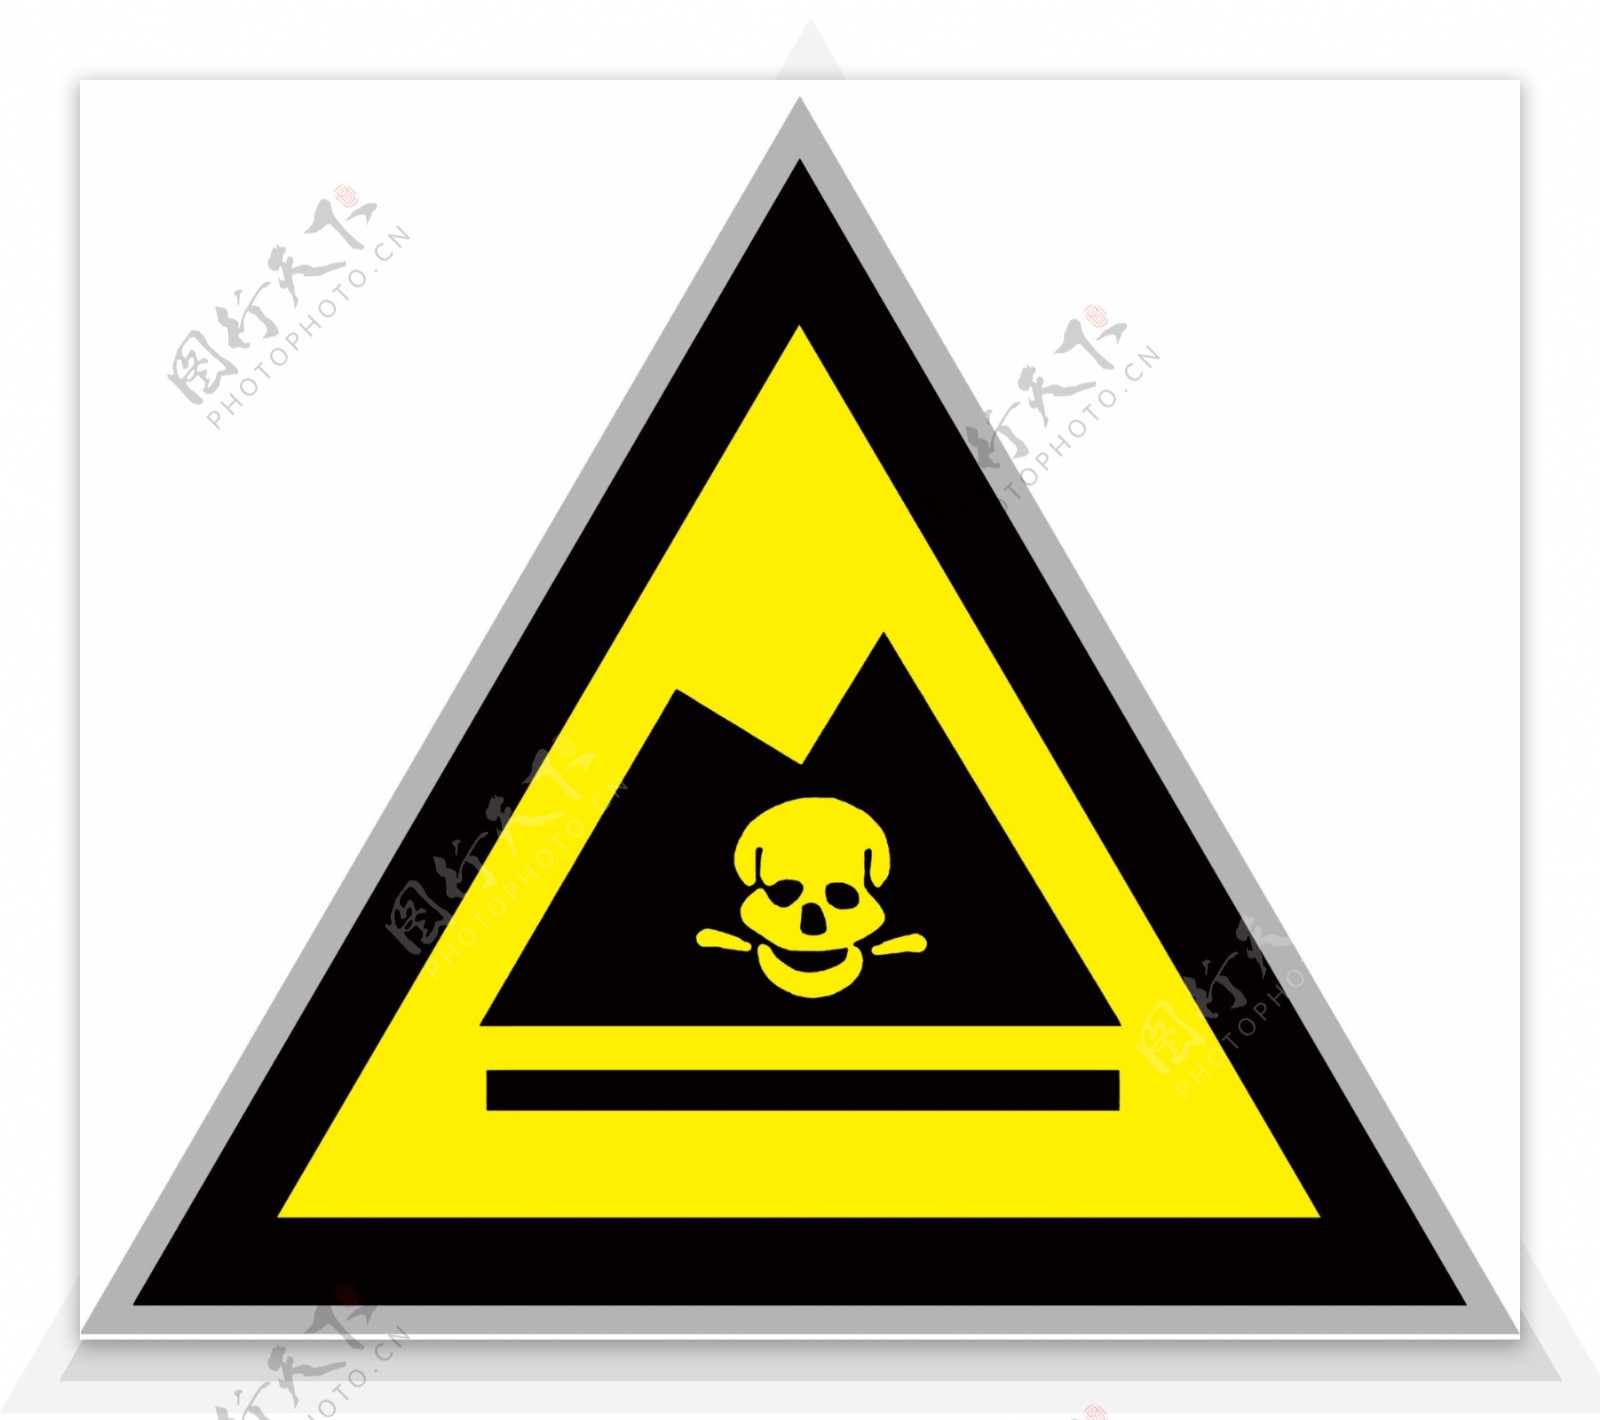 危险废物三角警示